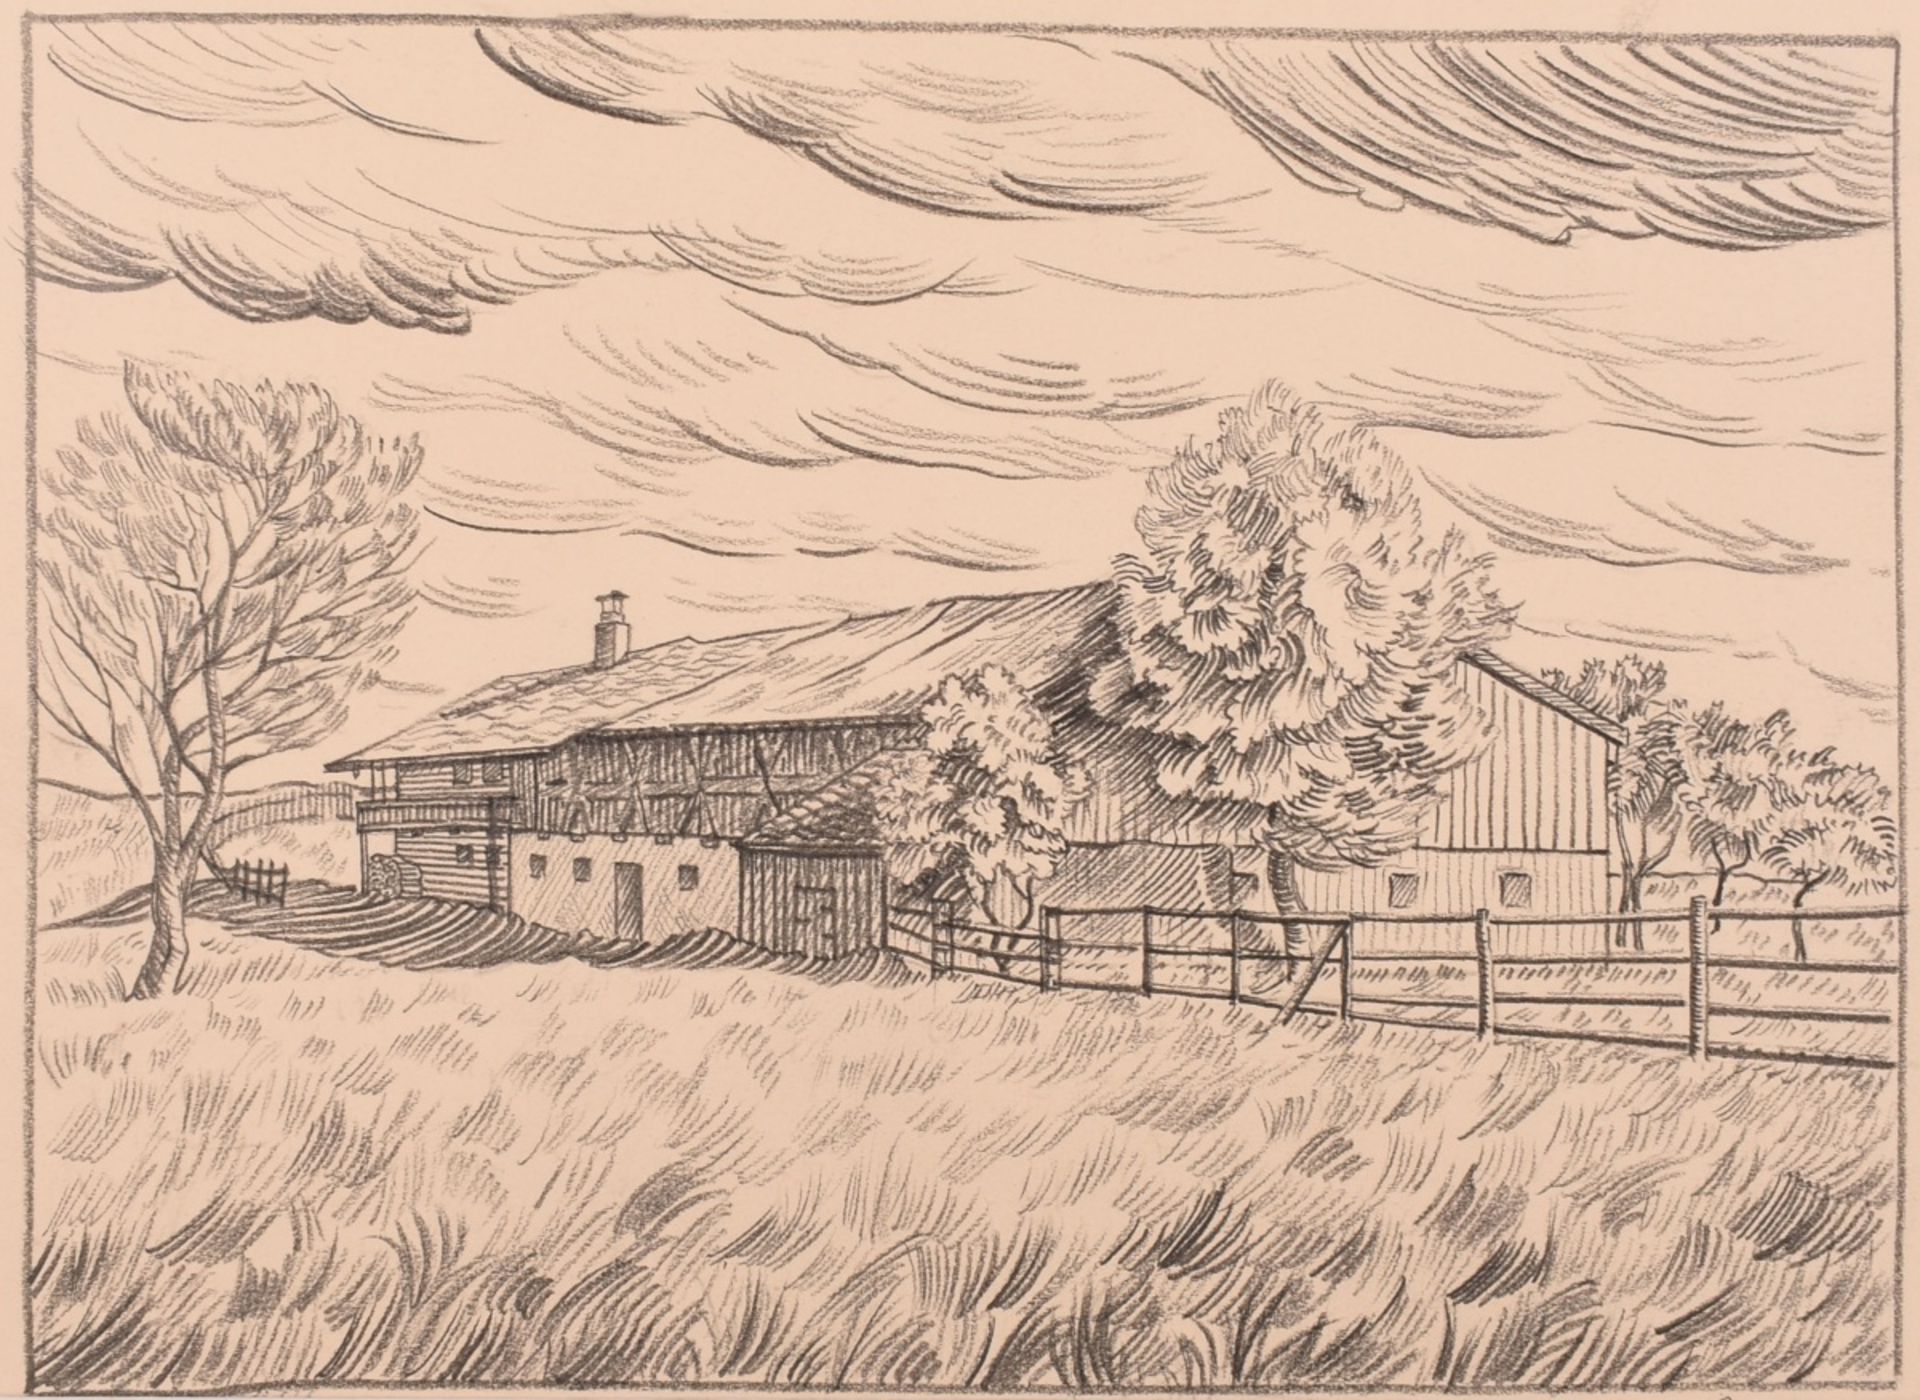 Scharl, Josef (1896 München - 1954 New York City) Zeichnung in Blei, Bauernhof in weiter Landschaf - Bild 2 aus 3